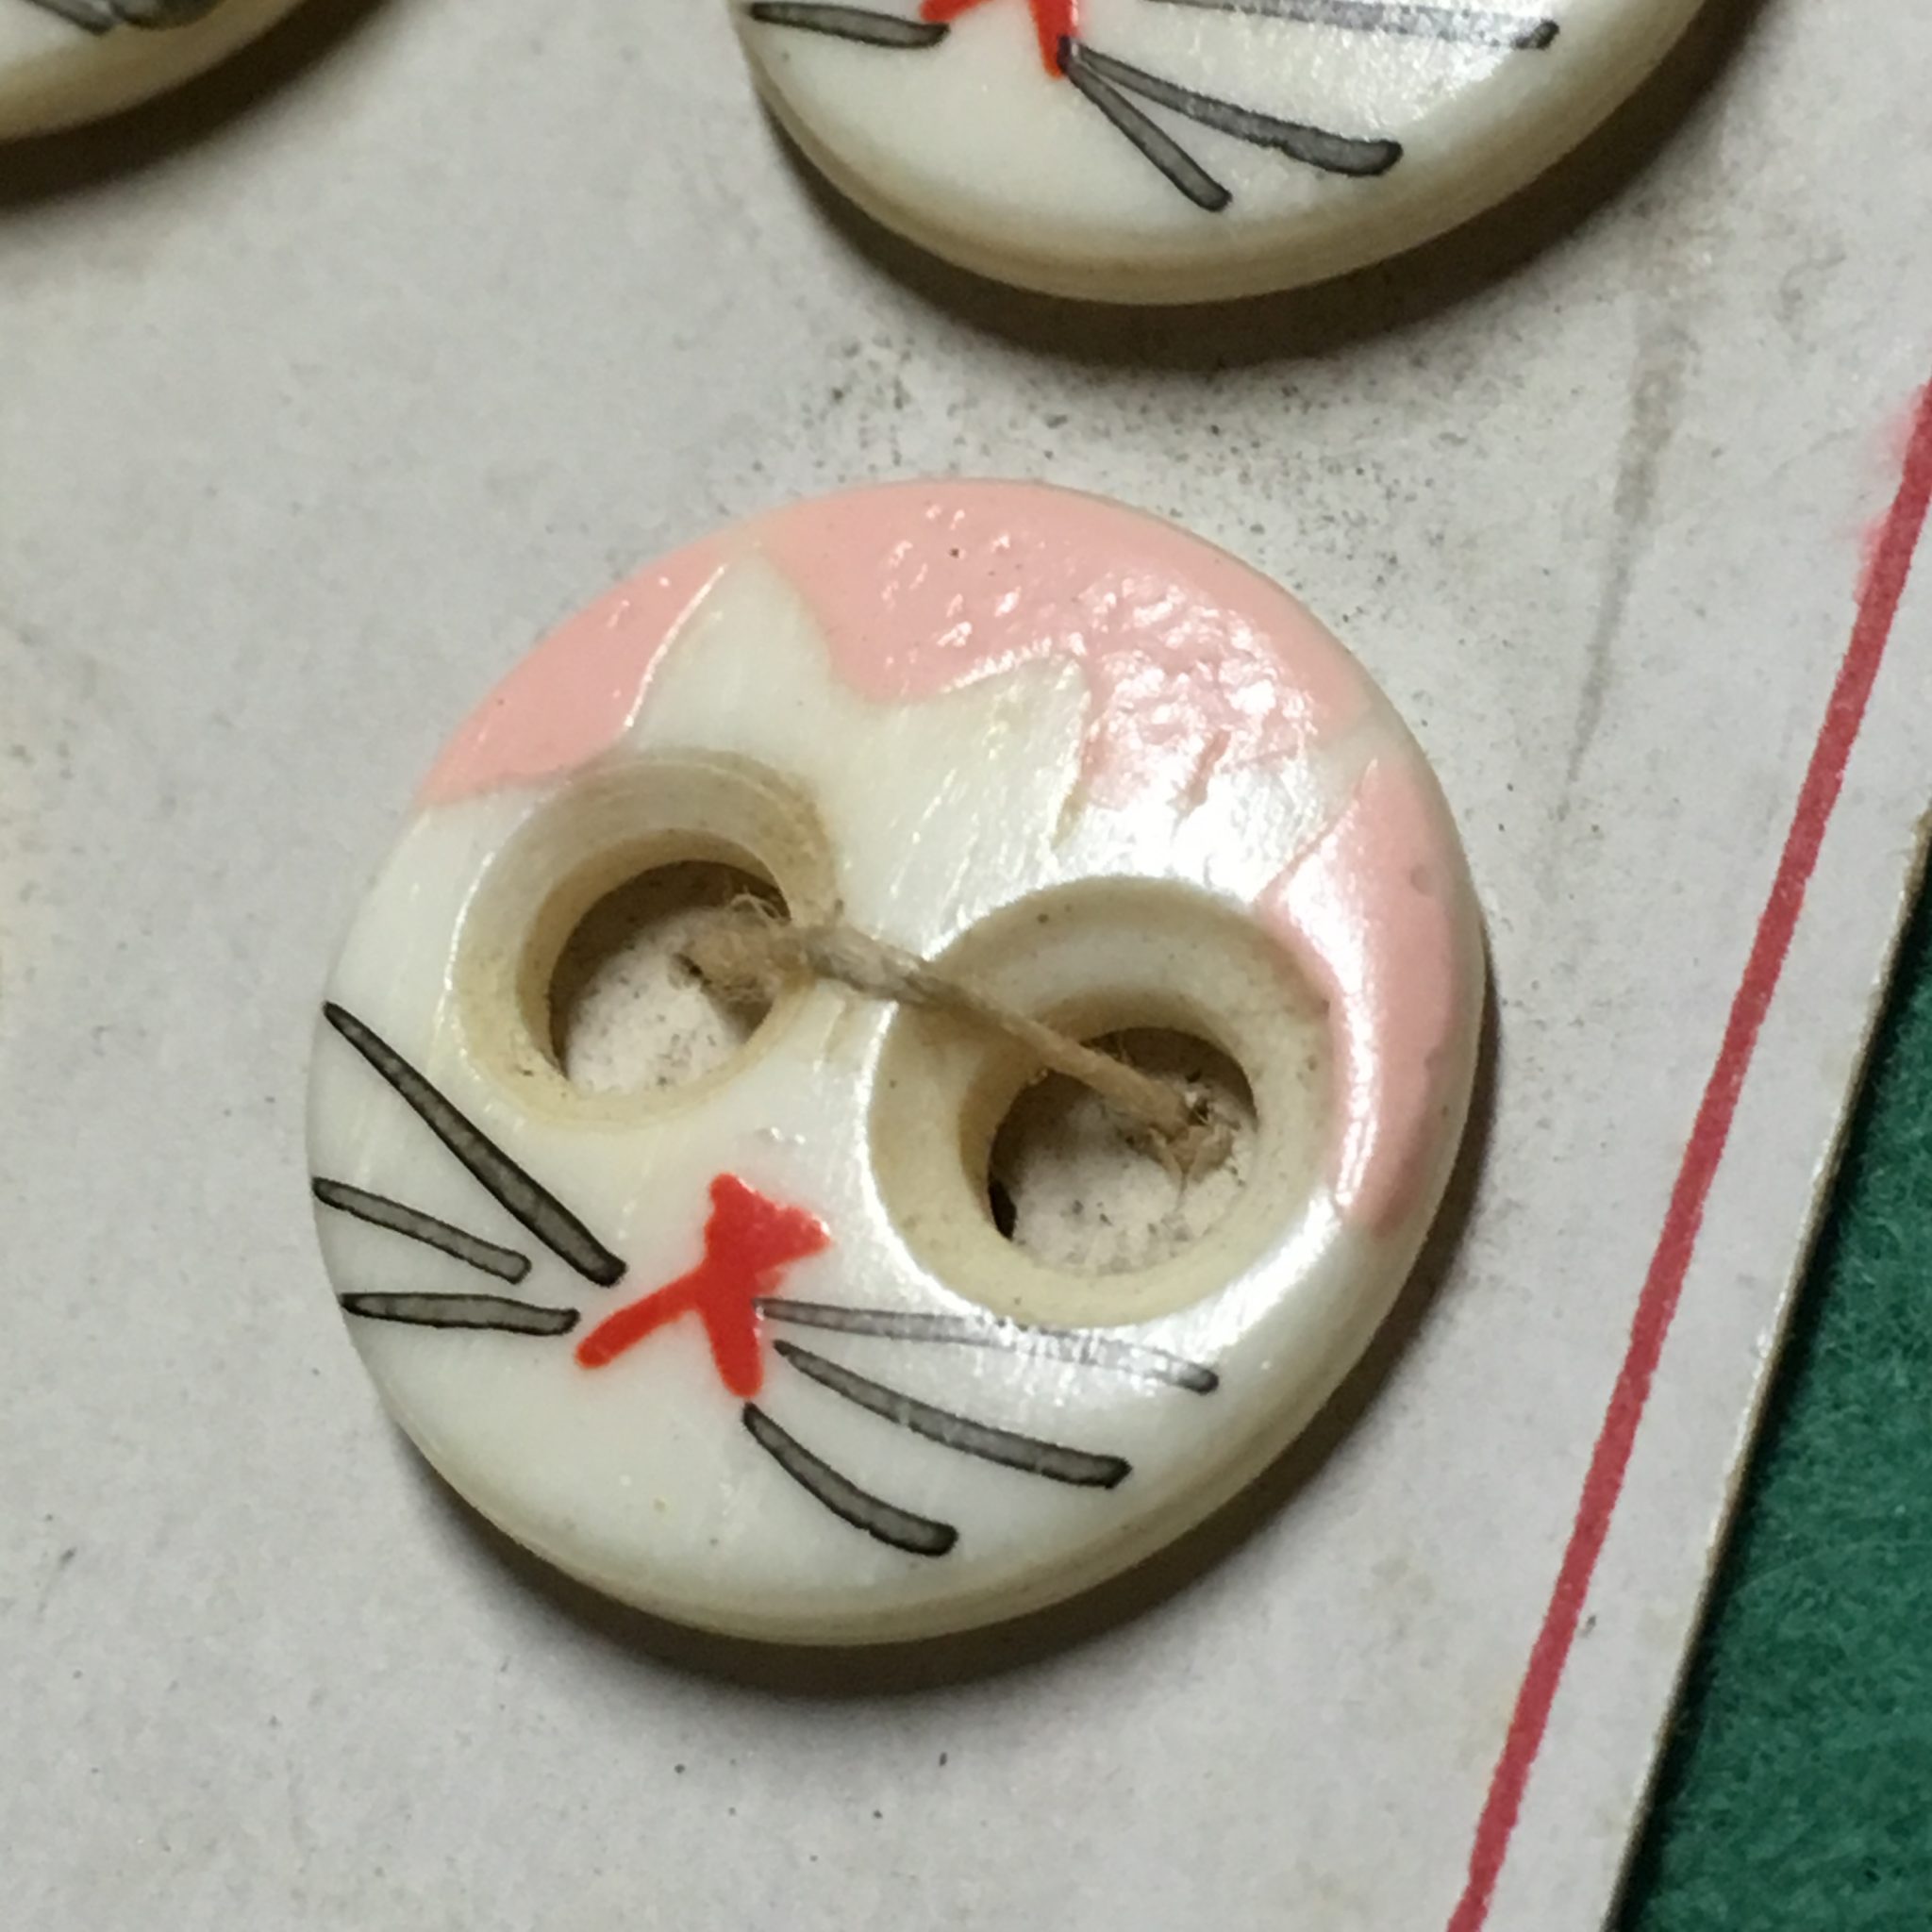 Bone “KIDDIE buttons” on original card